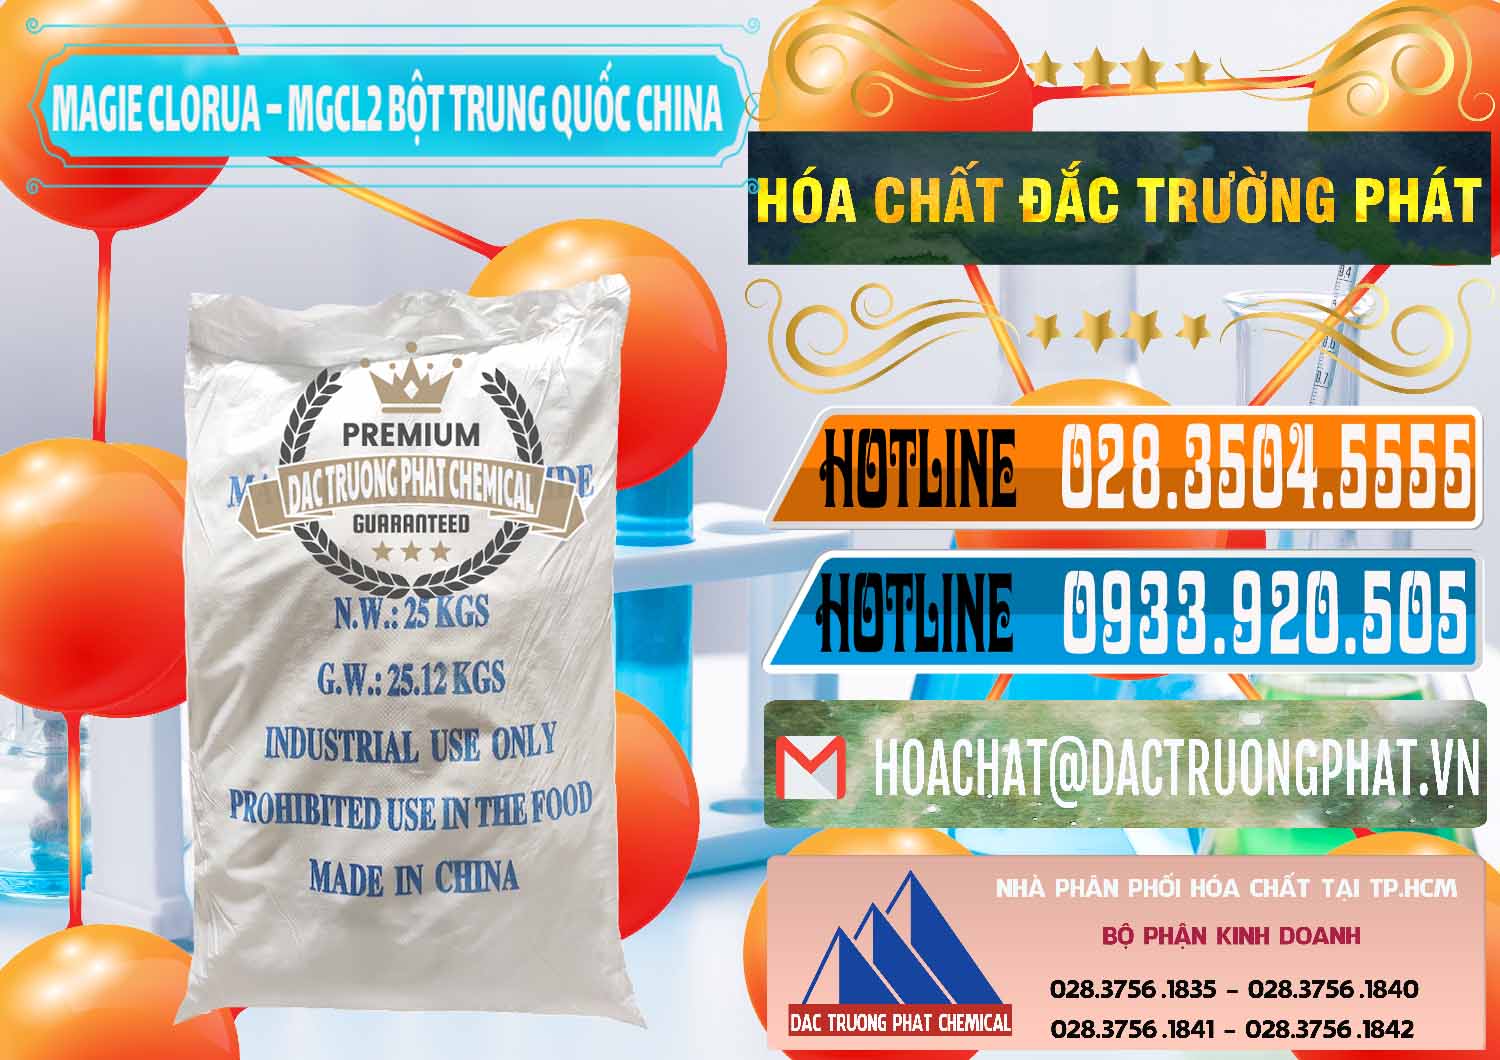 Nơi chuyên cung ứng - bán Magie Clorua – MGCL2 96% Dạng Bột Bao Chữ Xanh Trung Quốc China - 0207 - Cty bán và phân phối hóa chất tại TP.HCM - stmp.net